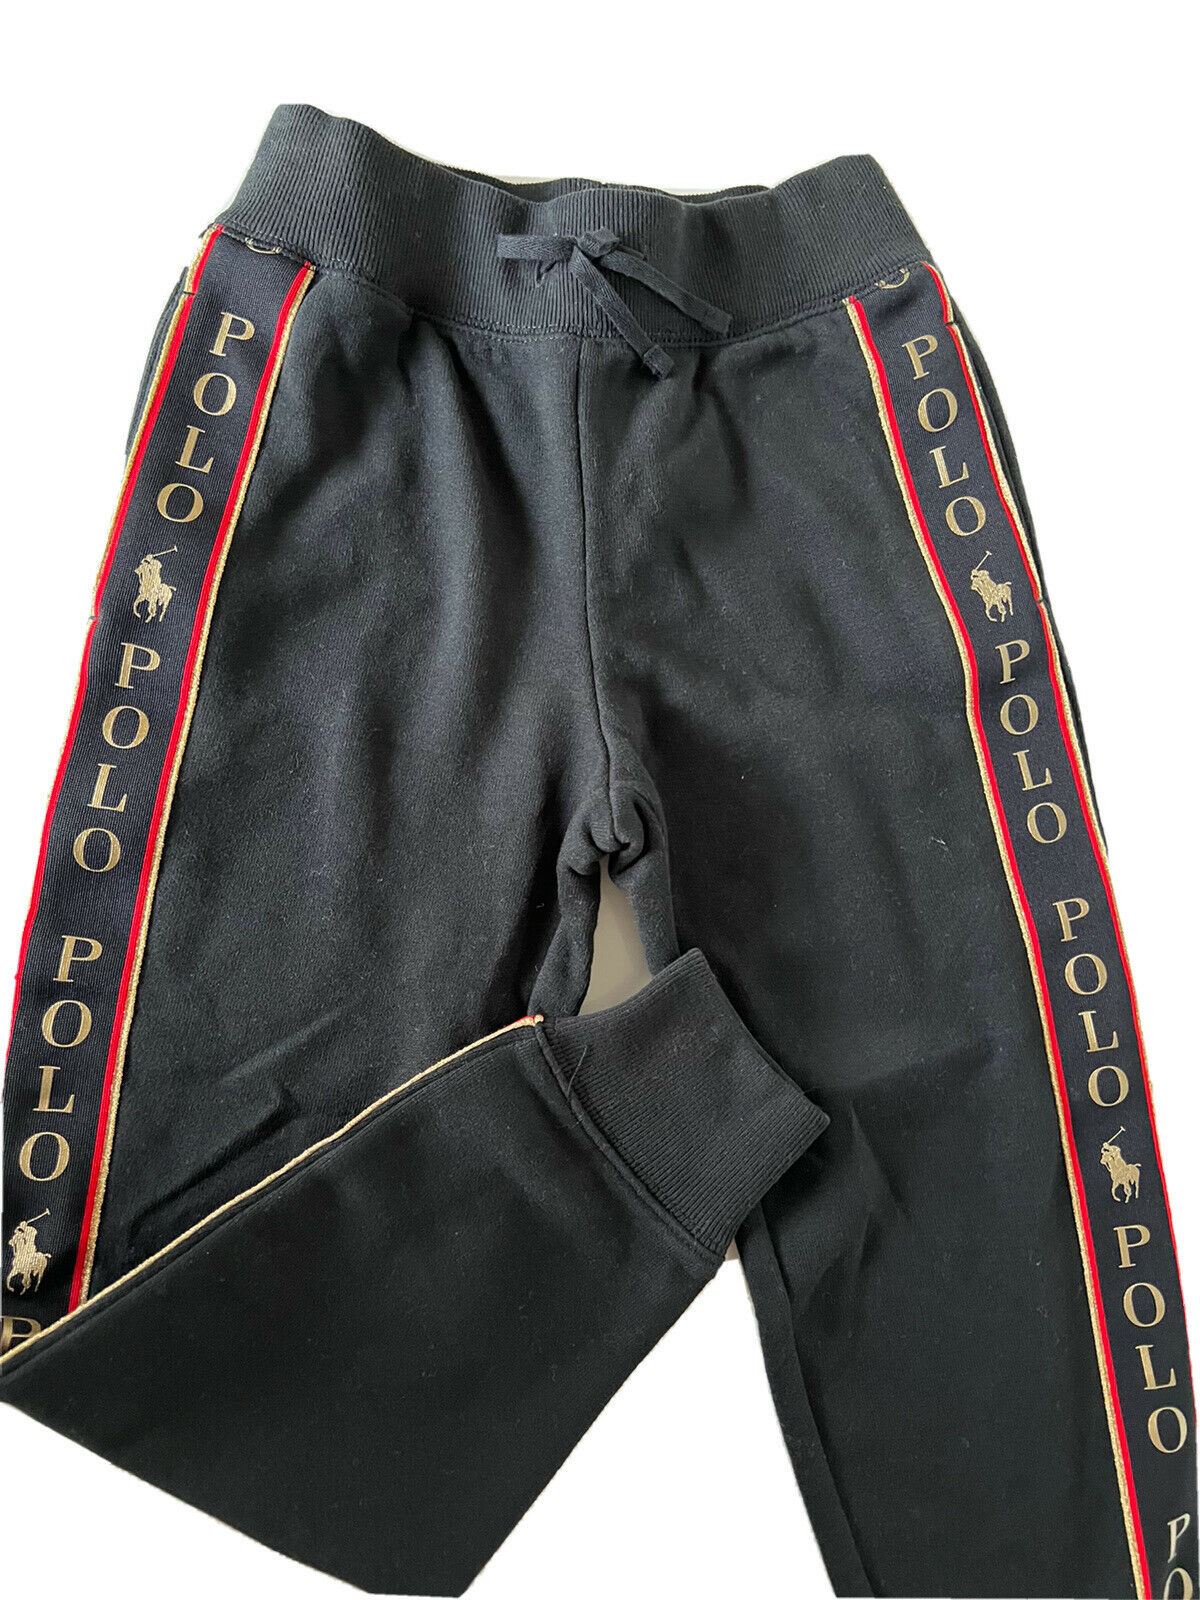 Neu mit Etikett: Schwarze Hose für Jungen von Polo Ralph Lauren, Größe S (7)